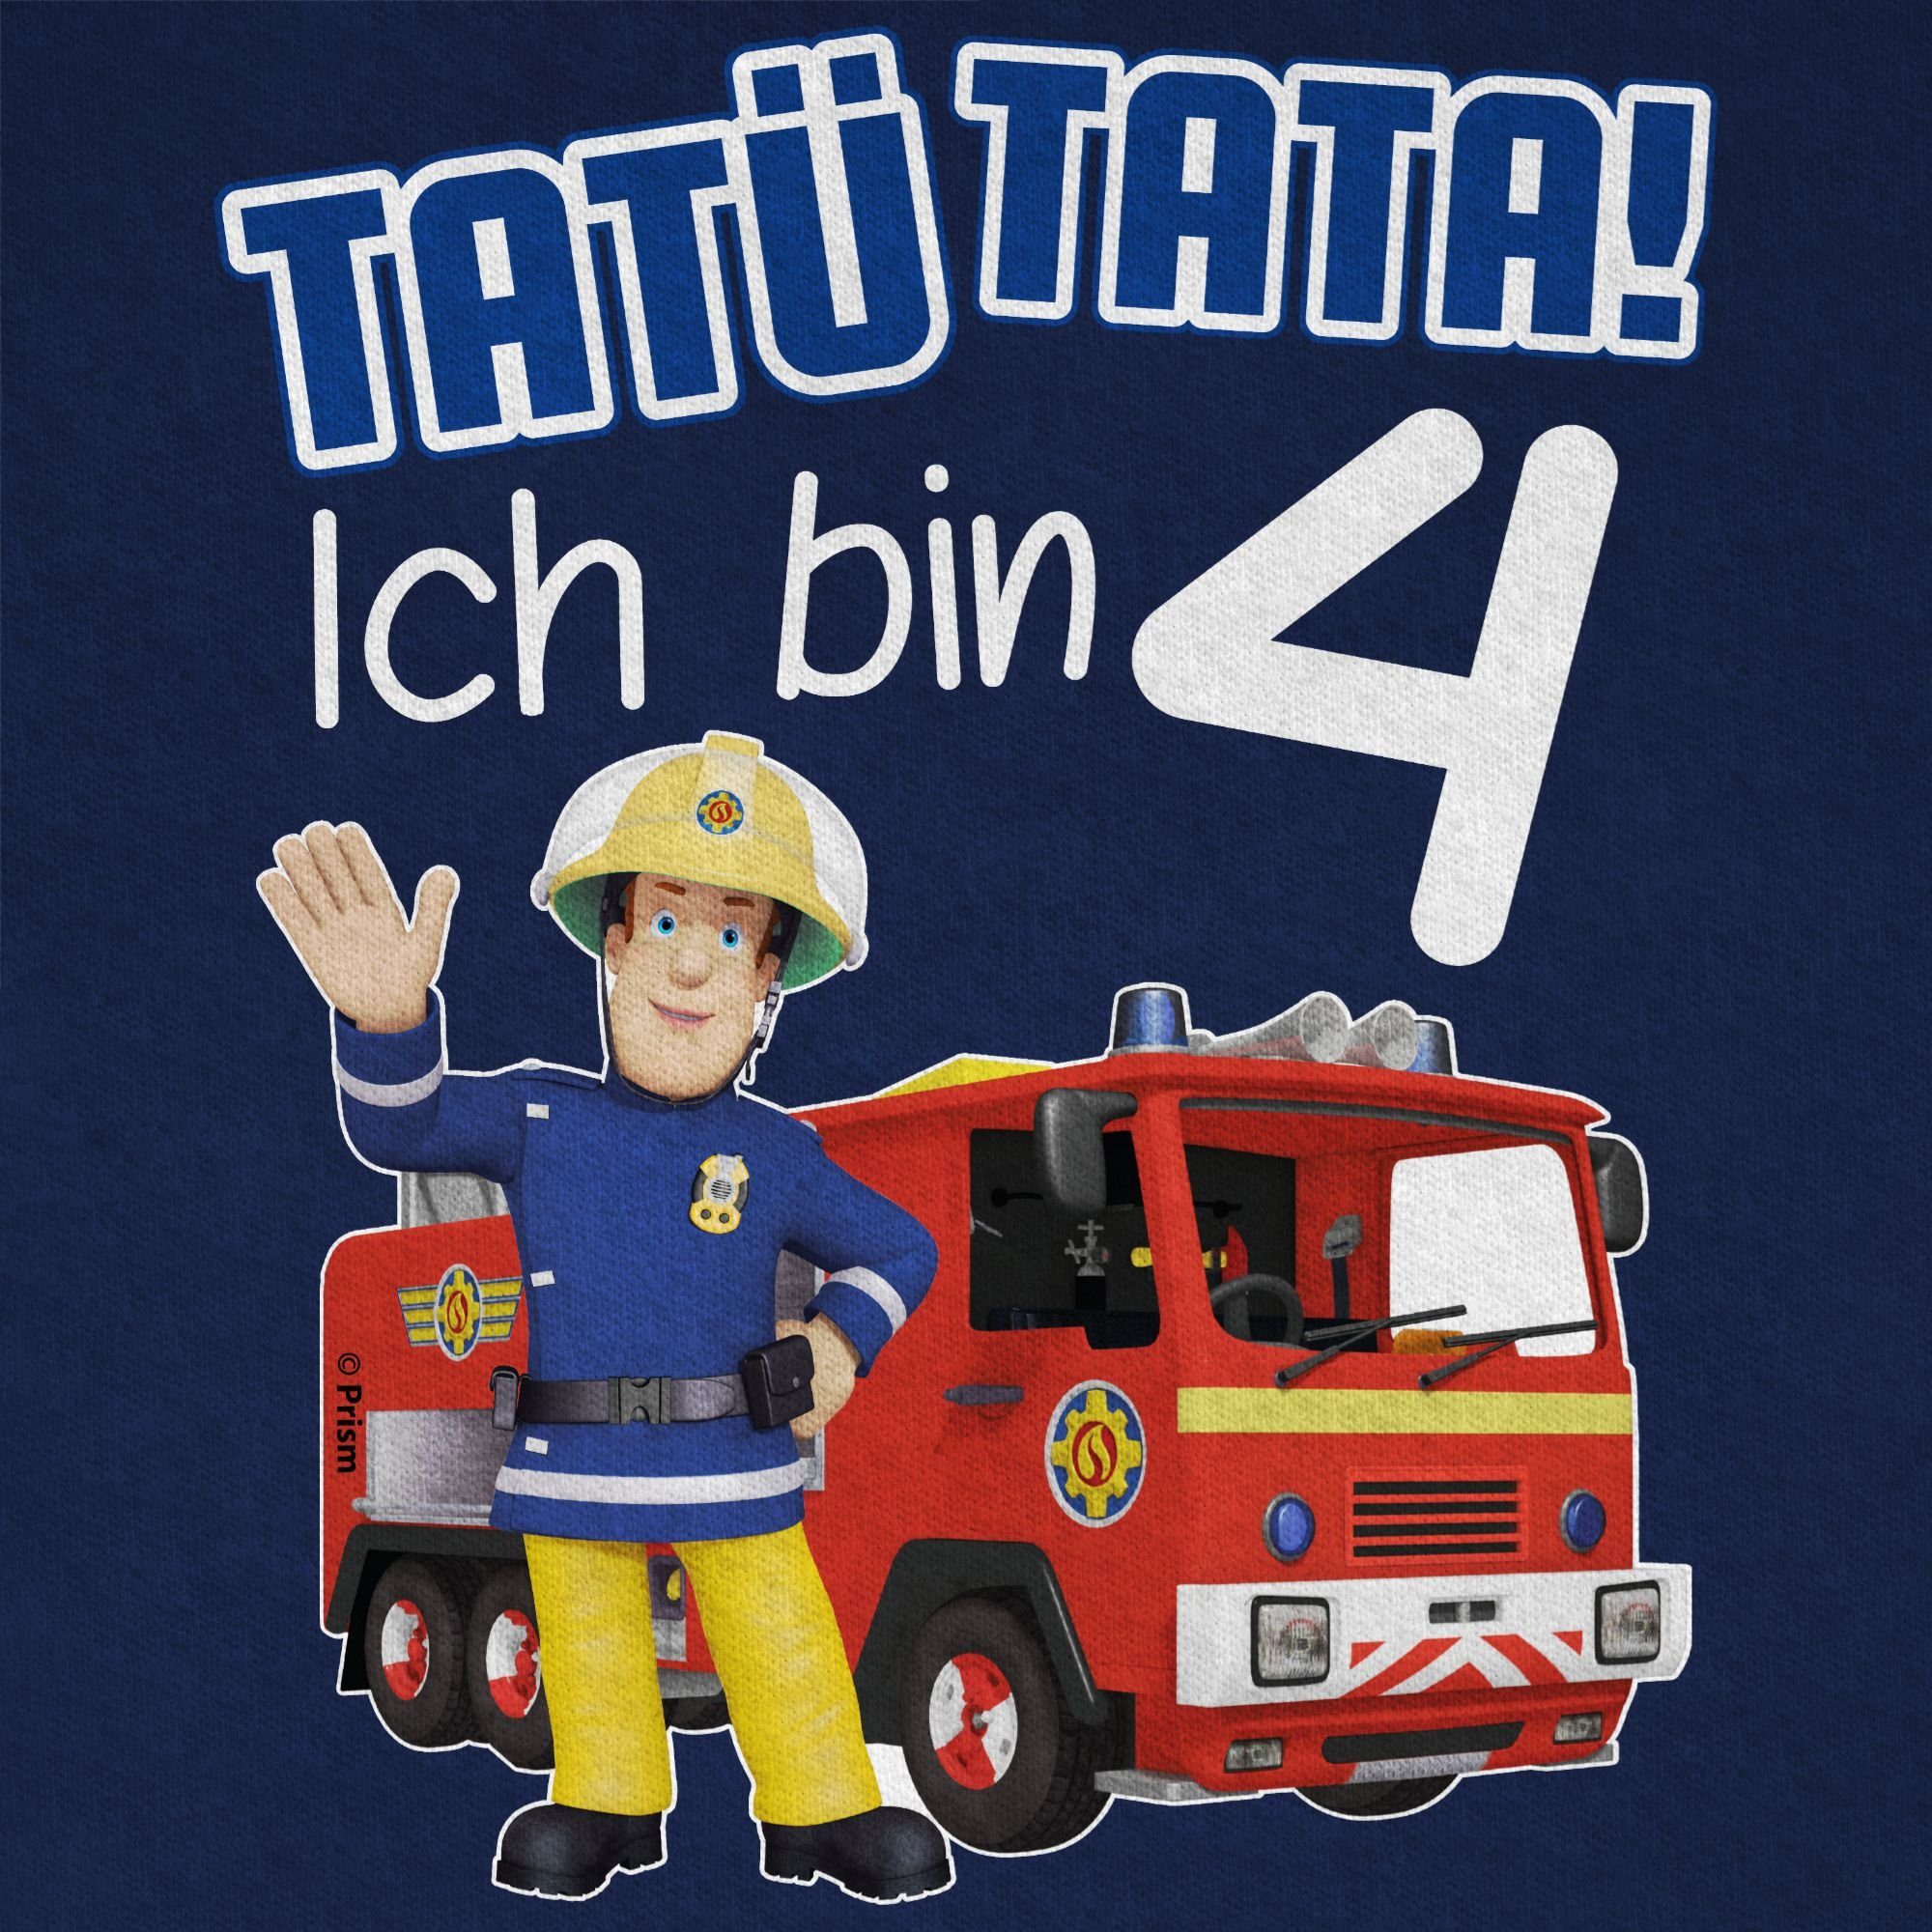 T-Shirt Feuerwehrmann Tatü Dunkelblau 4 bin Sam Shirtracer Ich Geburtstag Tata! Jungen 03